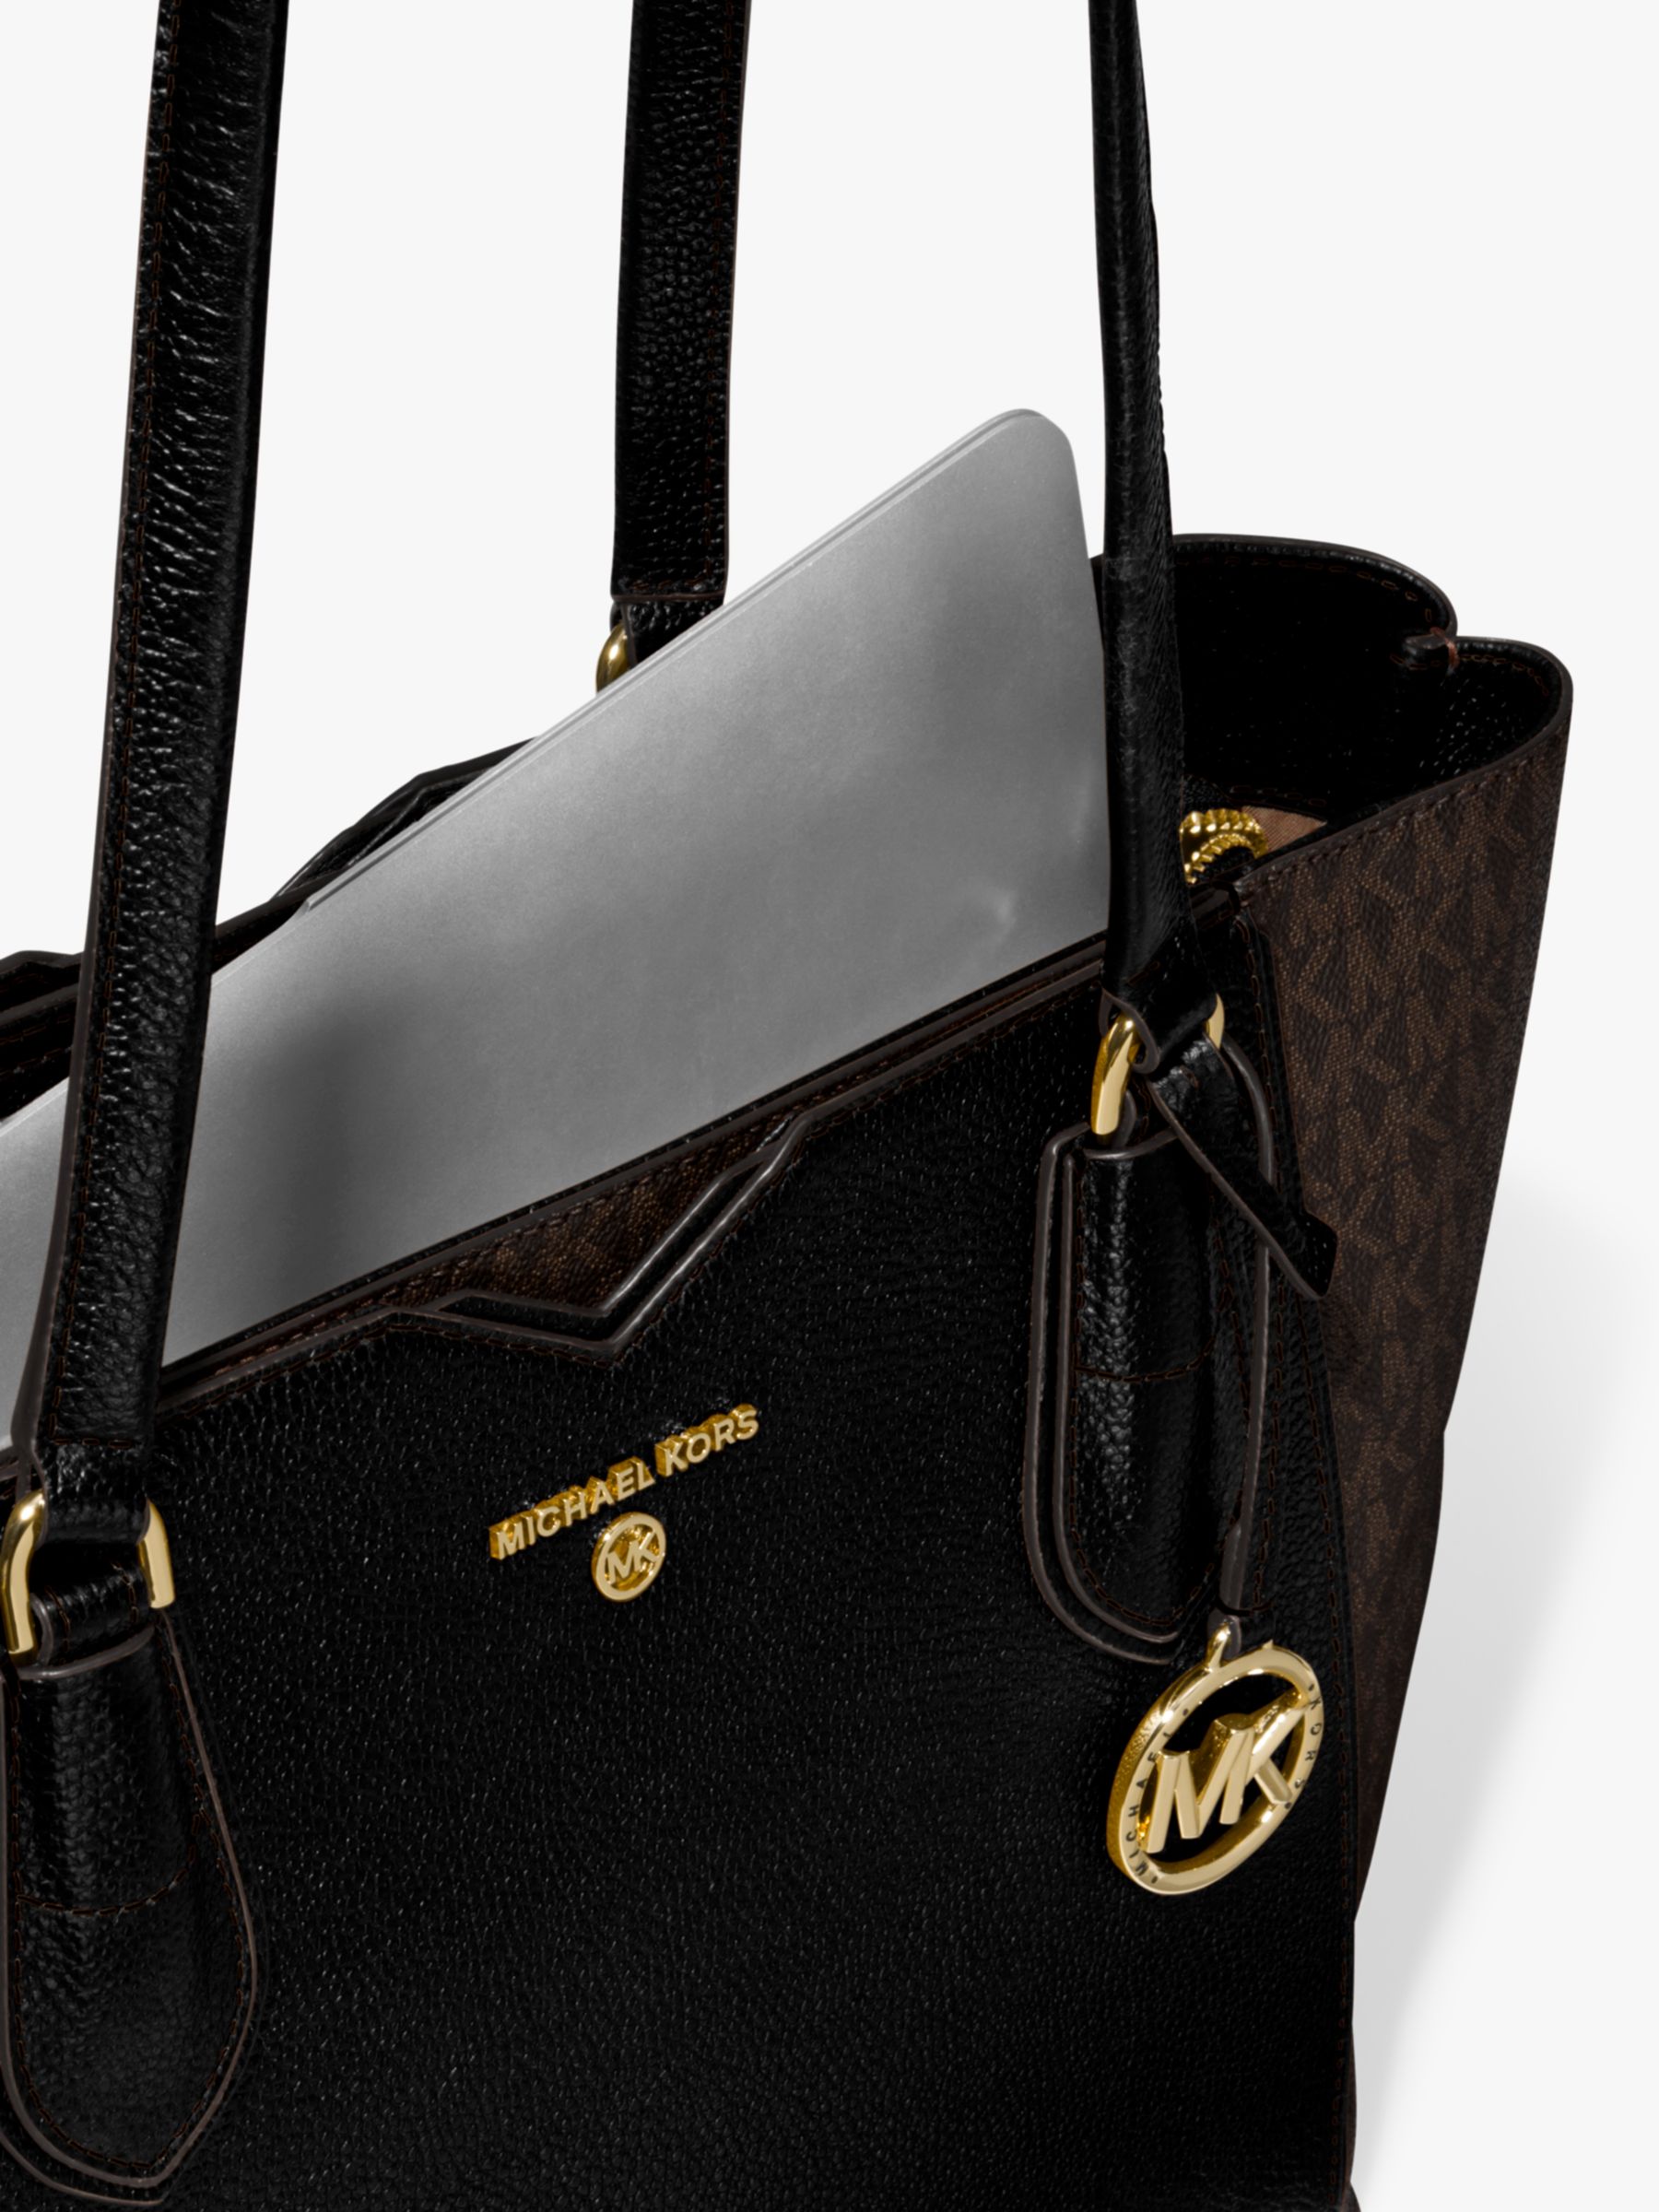 michael kors brown and black handbag